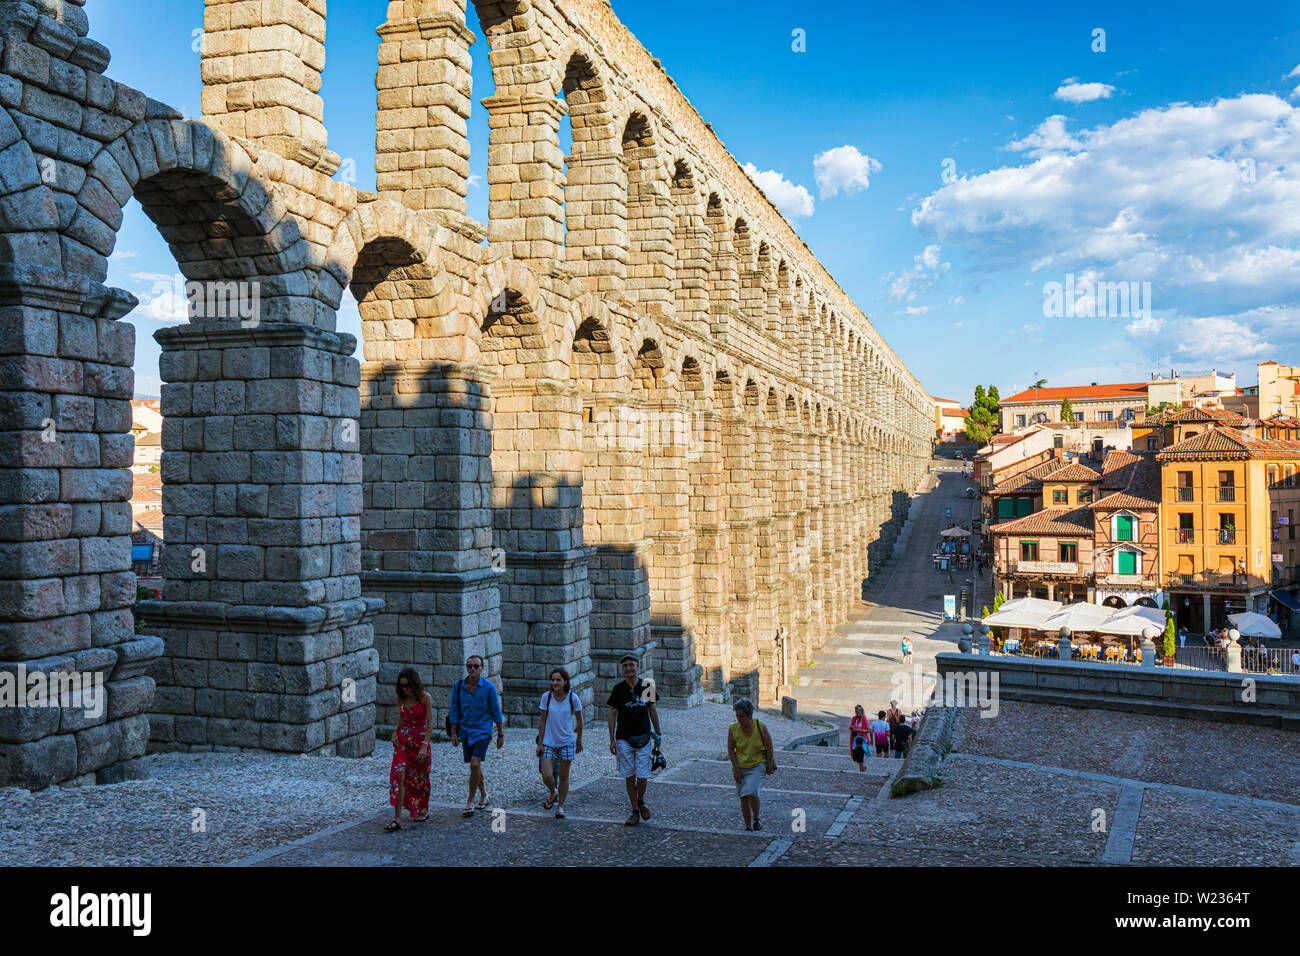 Segovia, provincia de Segovia, Castilla y León, España. El Acueducto Romano en la Plaza del Azoguejo que data desde el primer o segundo siglo DC. El viejo remolque Foto de stock